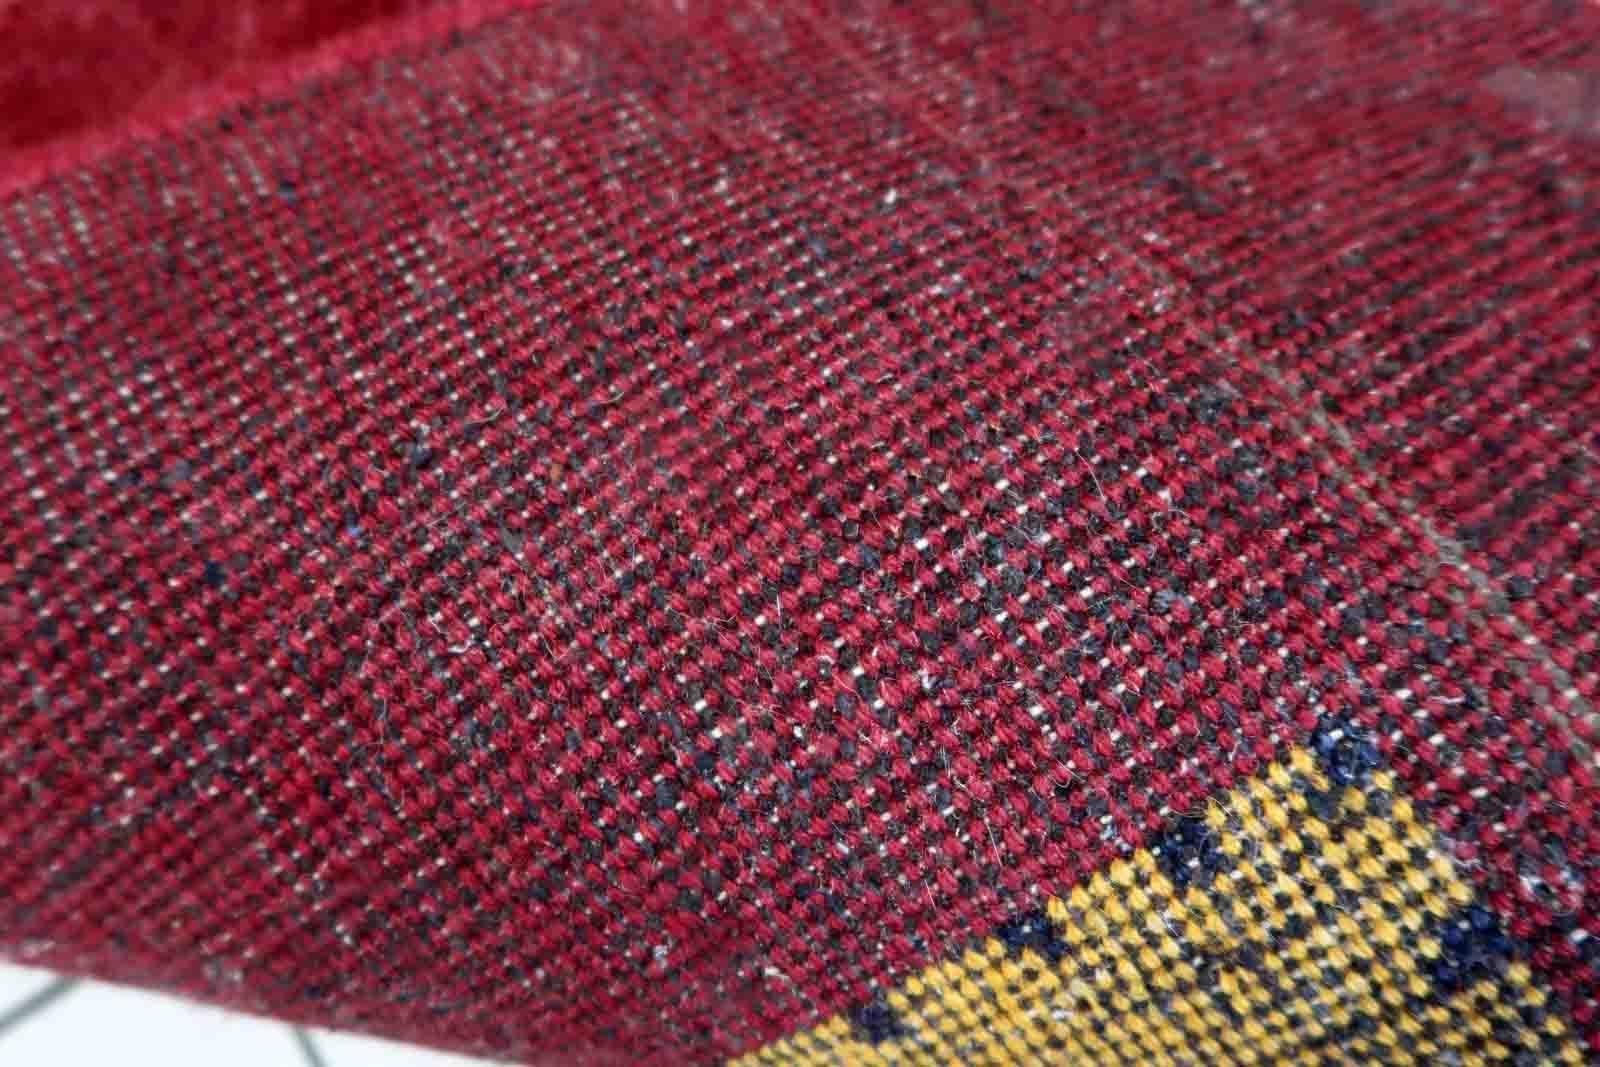 Handgefertigter Gabbeh-Teppich in tiefroter Farbe und geometrischem Muster. Der Teppich stammt aus dem Ende des 20. Jahrhunderts und ist in gutem Originalzustand.

-Zustand: original gut,

-Umgebung: 1970er Jahre,

-Größe: 4,6' x 6,6' (143cm x